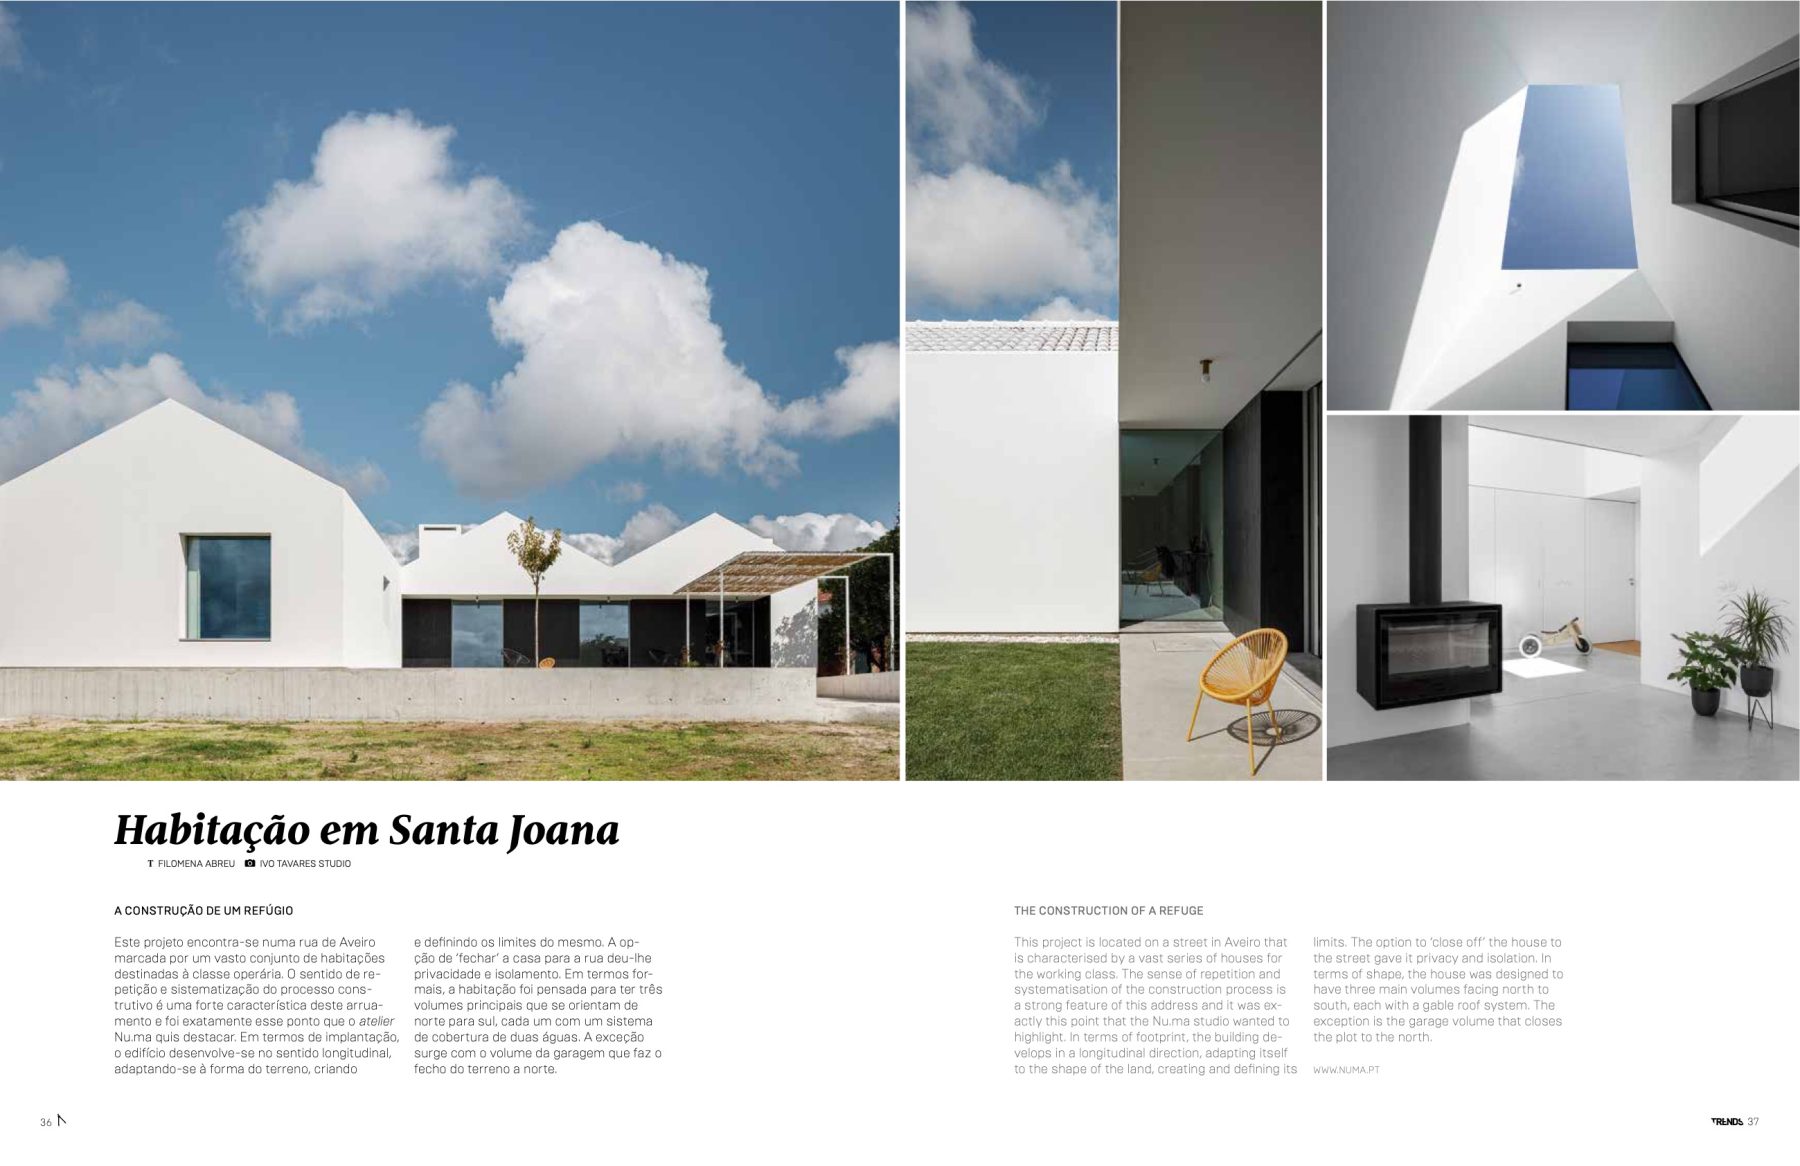 Trends Magazine #76 do atelier Nu.ma com fotografia arquitetura de ivo tavares studio - architectural photography